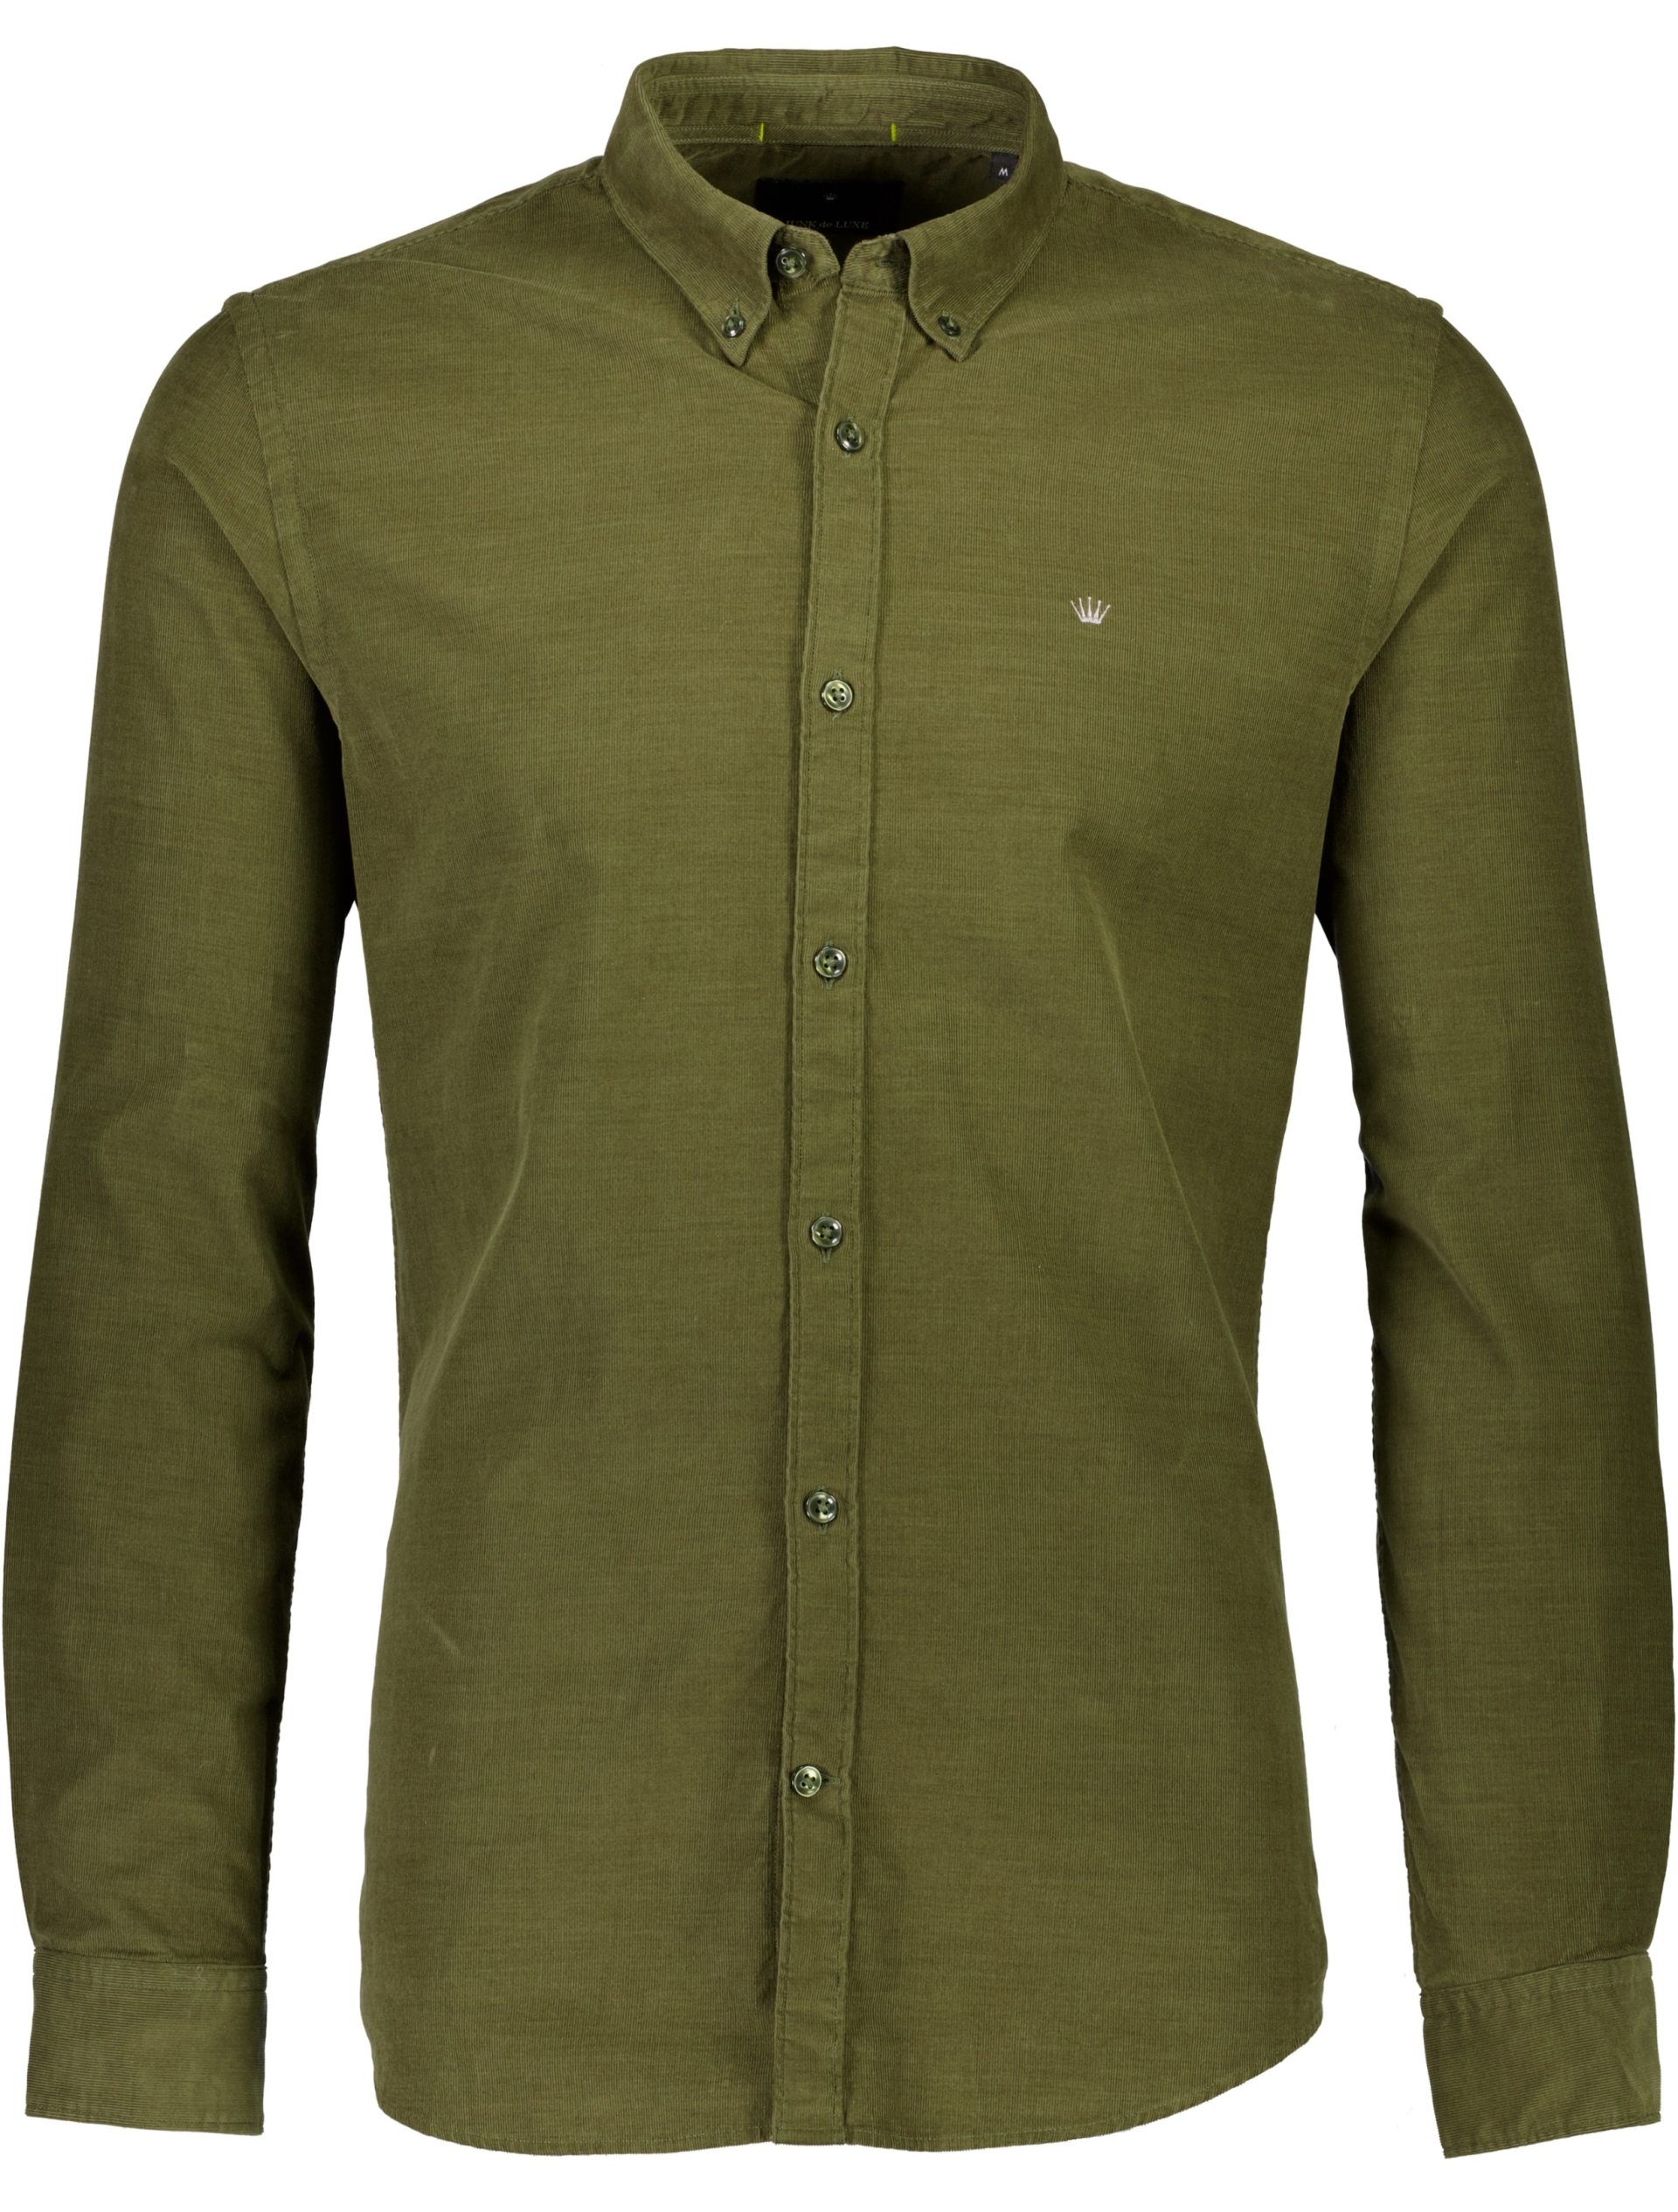 Junk de Luxe Casual skjorte grøn / army